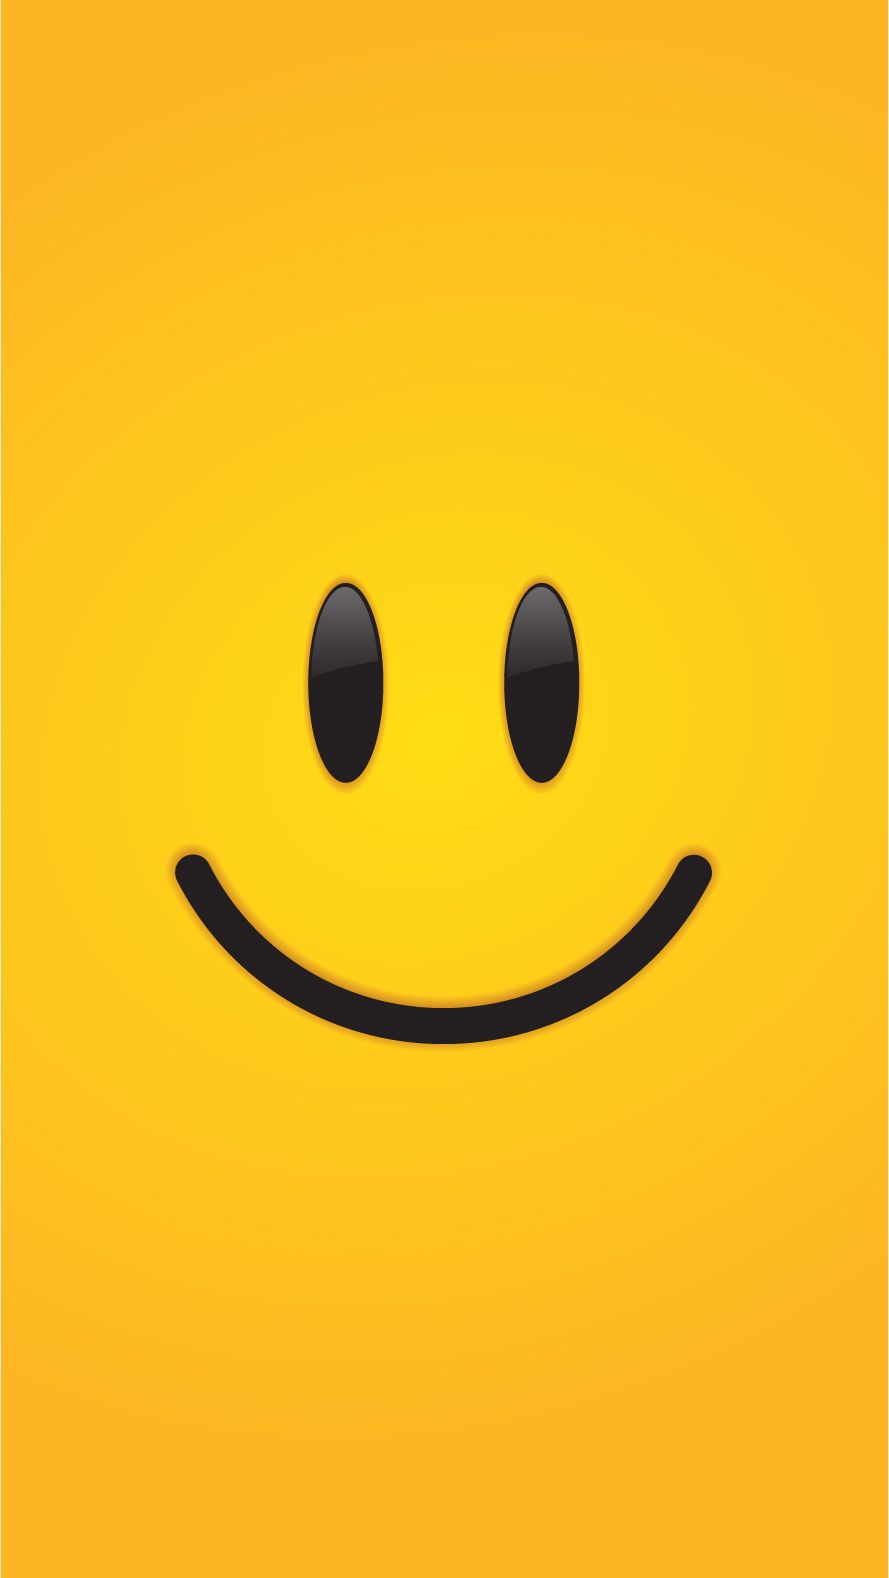 emoji wallpaper,emoticon,yellow,smile,smiley,black